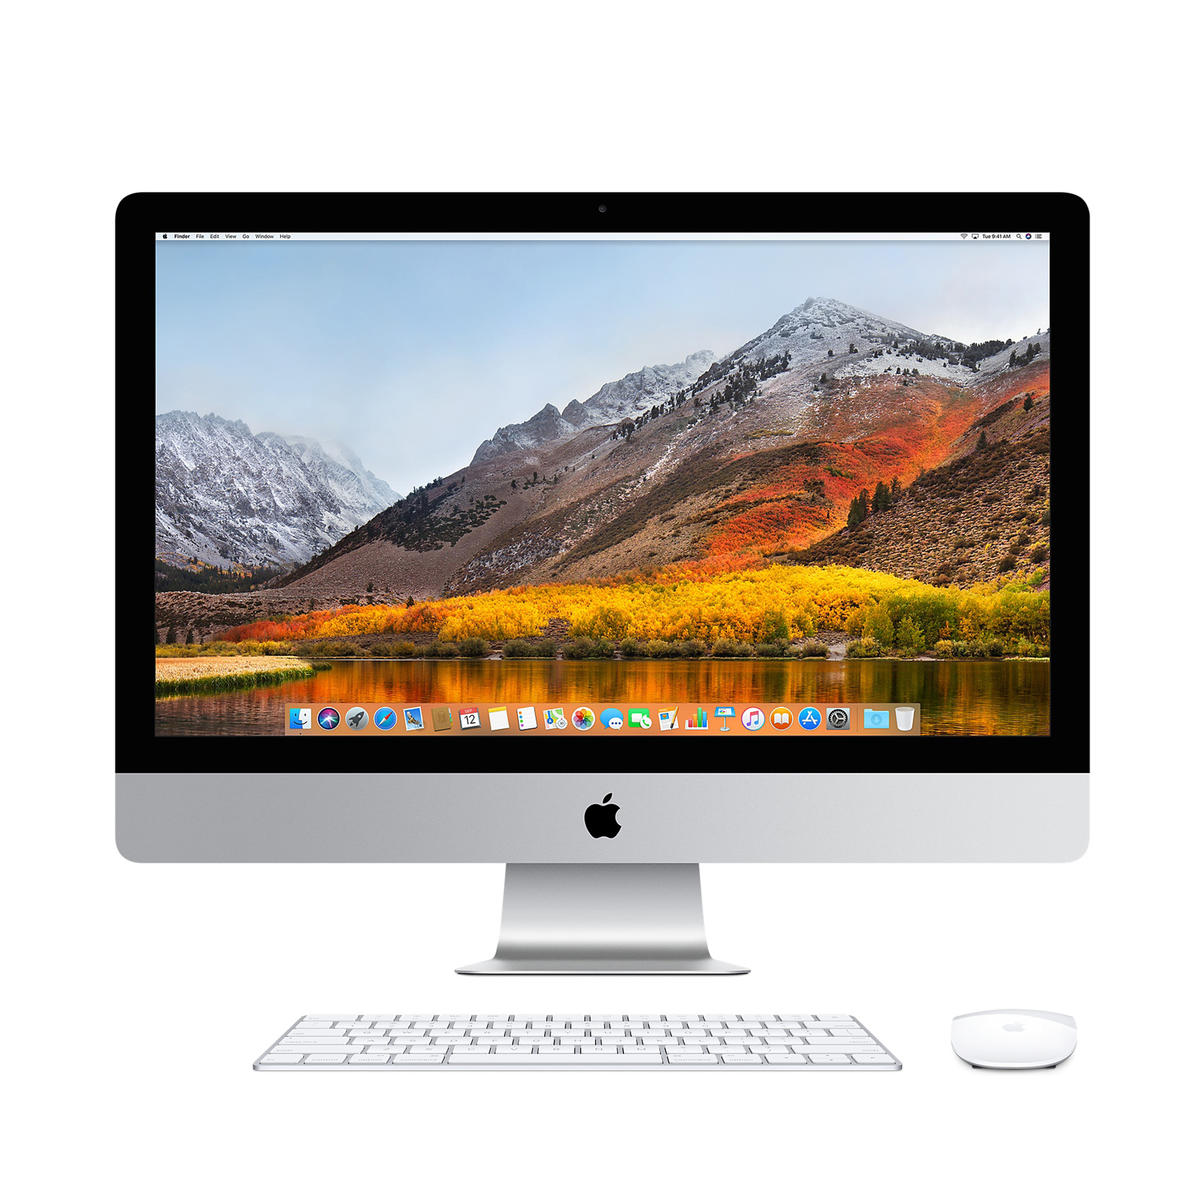 Abierto - Apple iMac 21.5" Core i5 2.3GHz | 8GB | 1TB Fusion